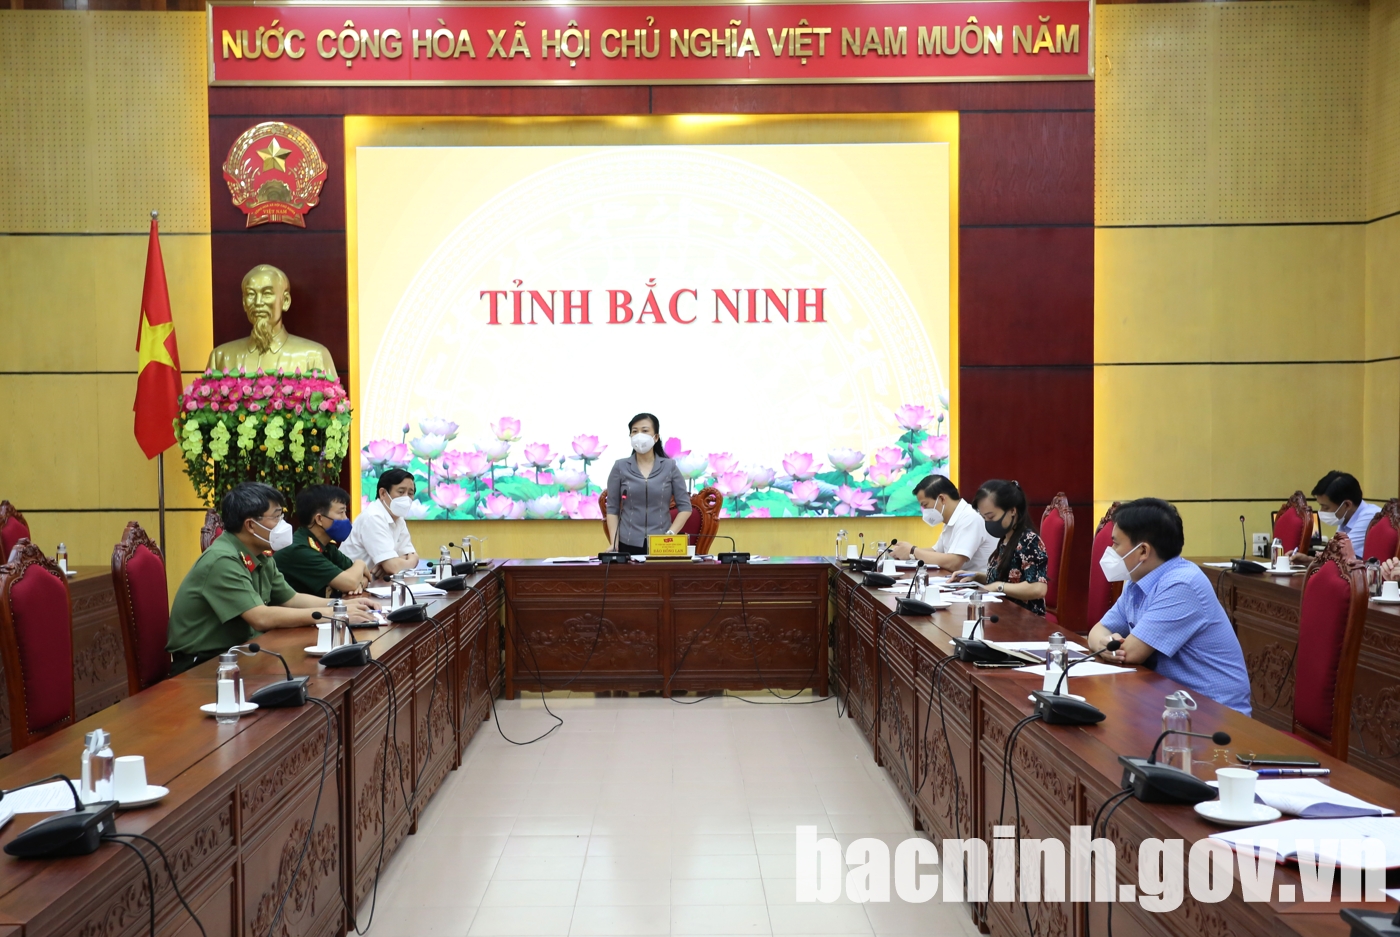 Bắc Ninh đề xuất áp dụng biện pháp bố trí chỗ ăn, ở tạm cho người lao động trong khu vực nhà máy để duy trì sản xuất